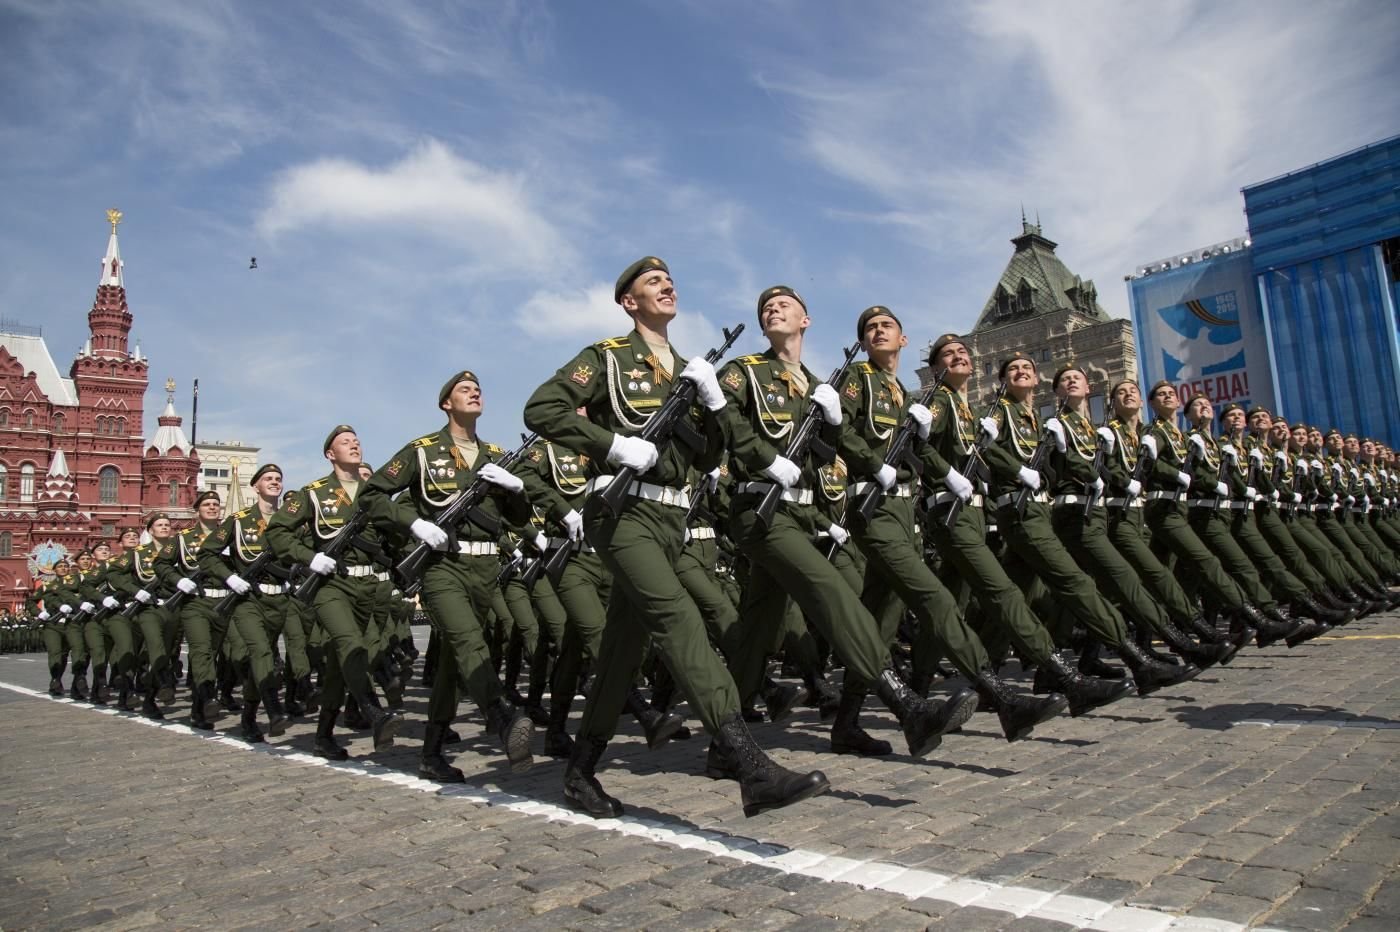 Очень военный день. Армия России. Российский солдат на параде. Солдаты на параде. Вооруженные силы России.